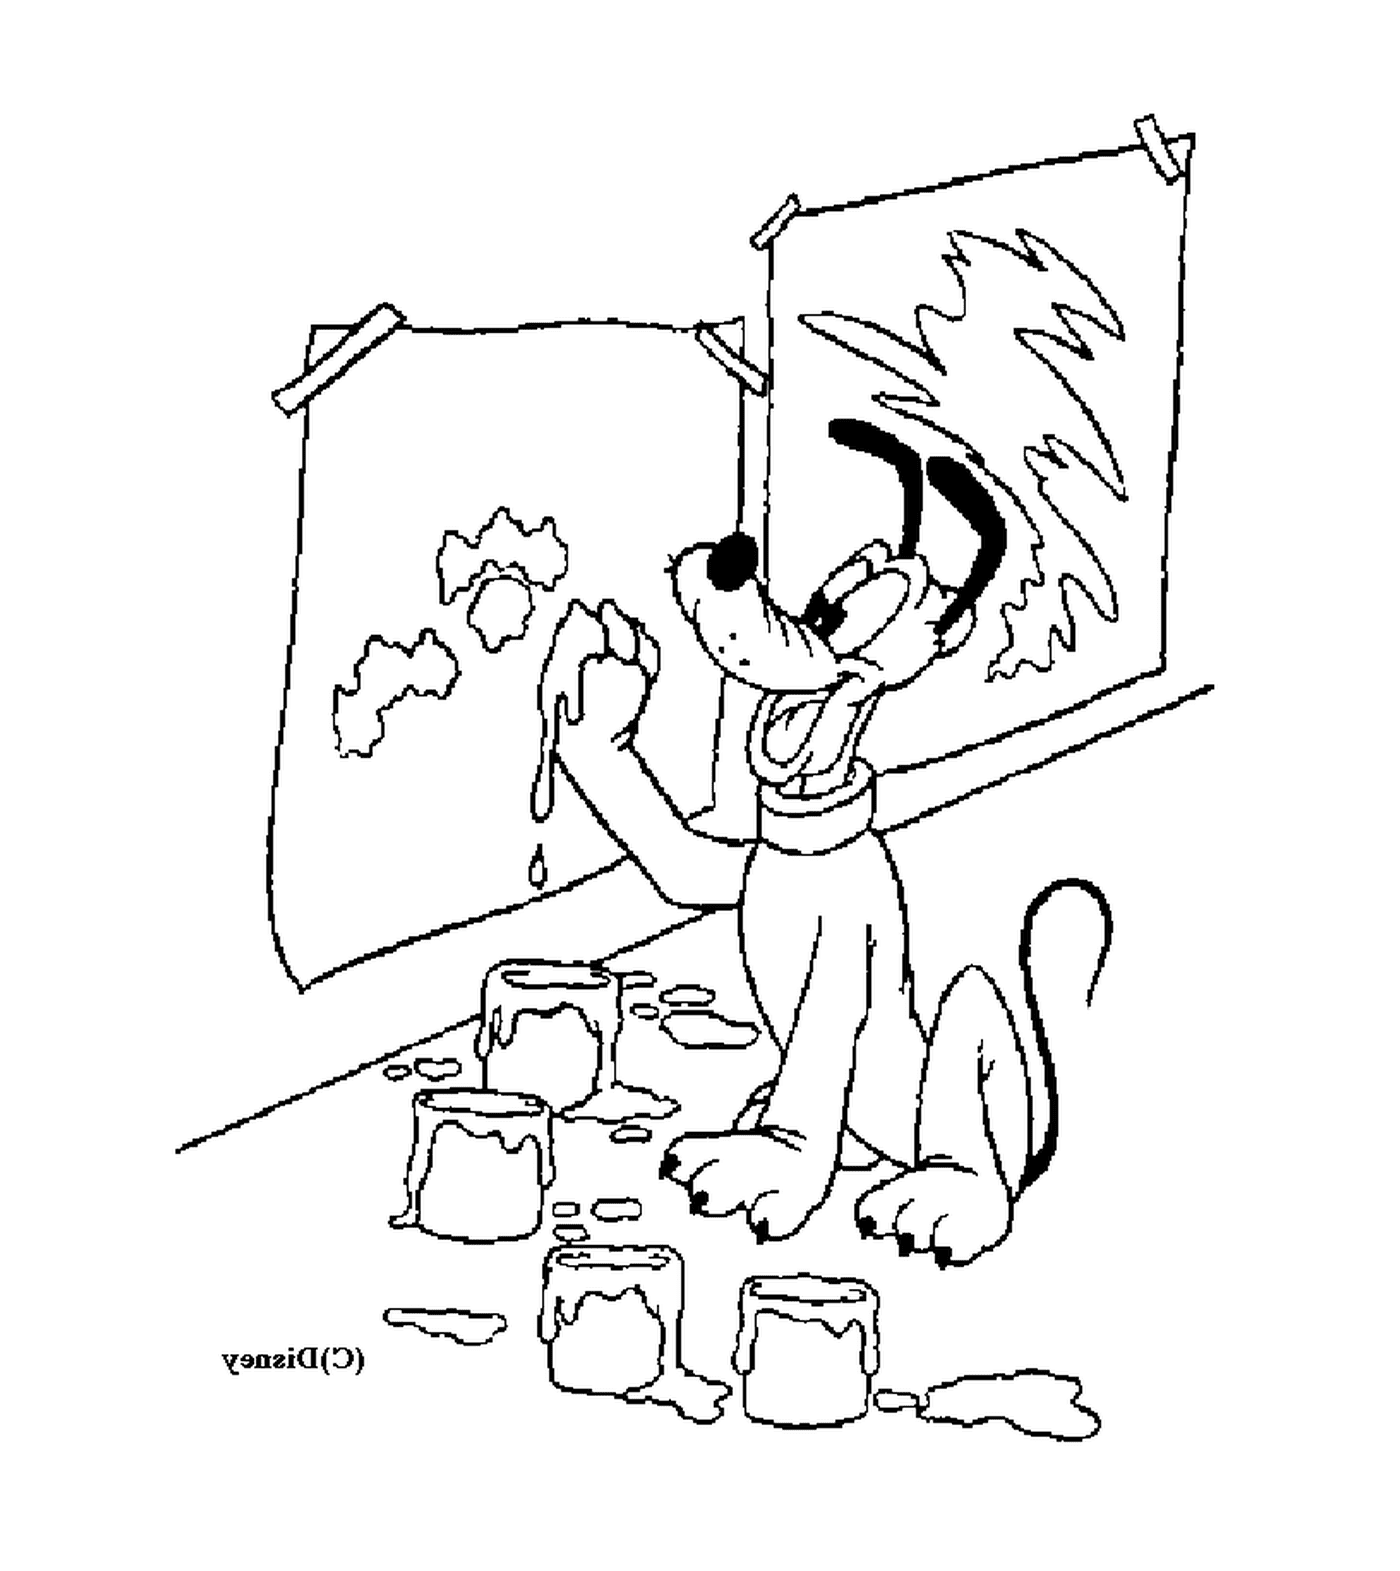  Hund malt ein Gemälde 